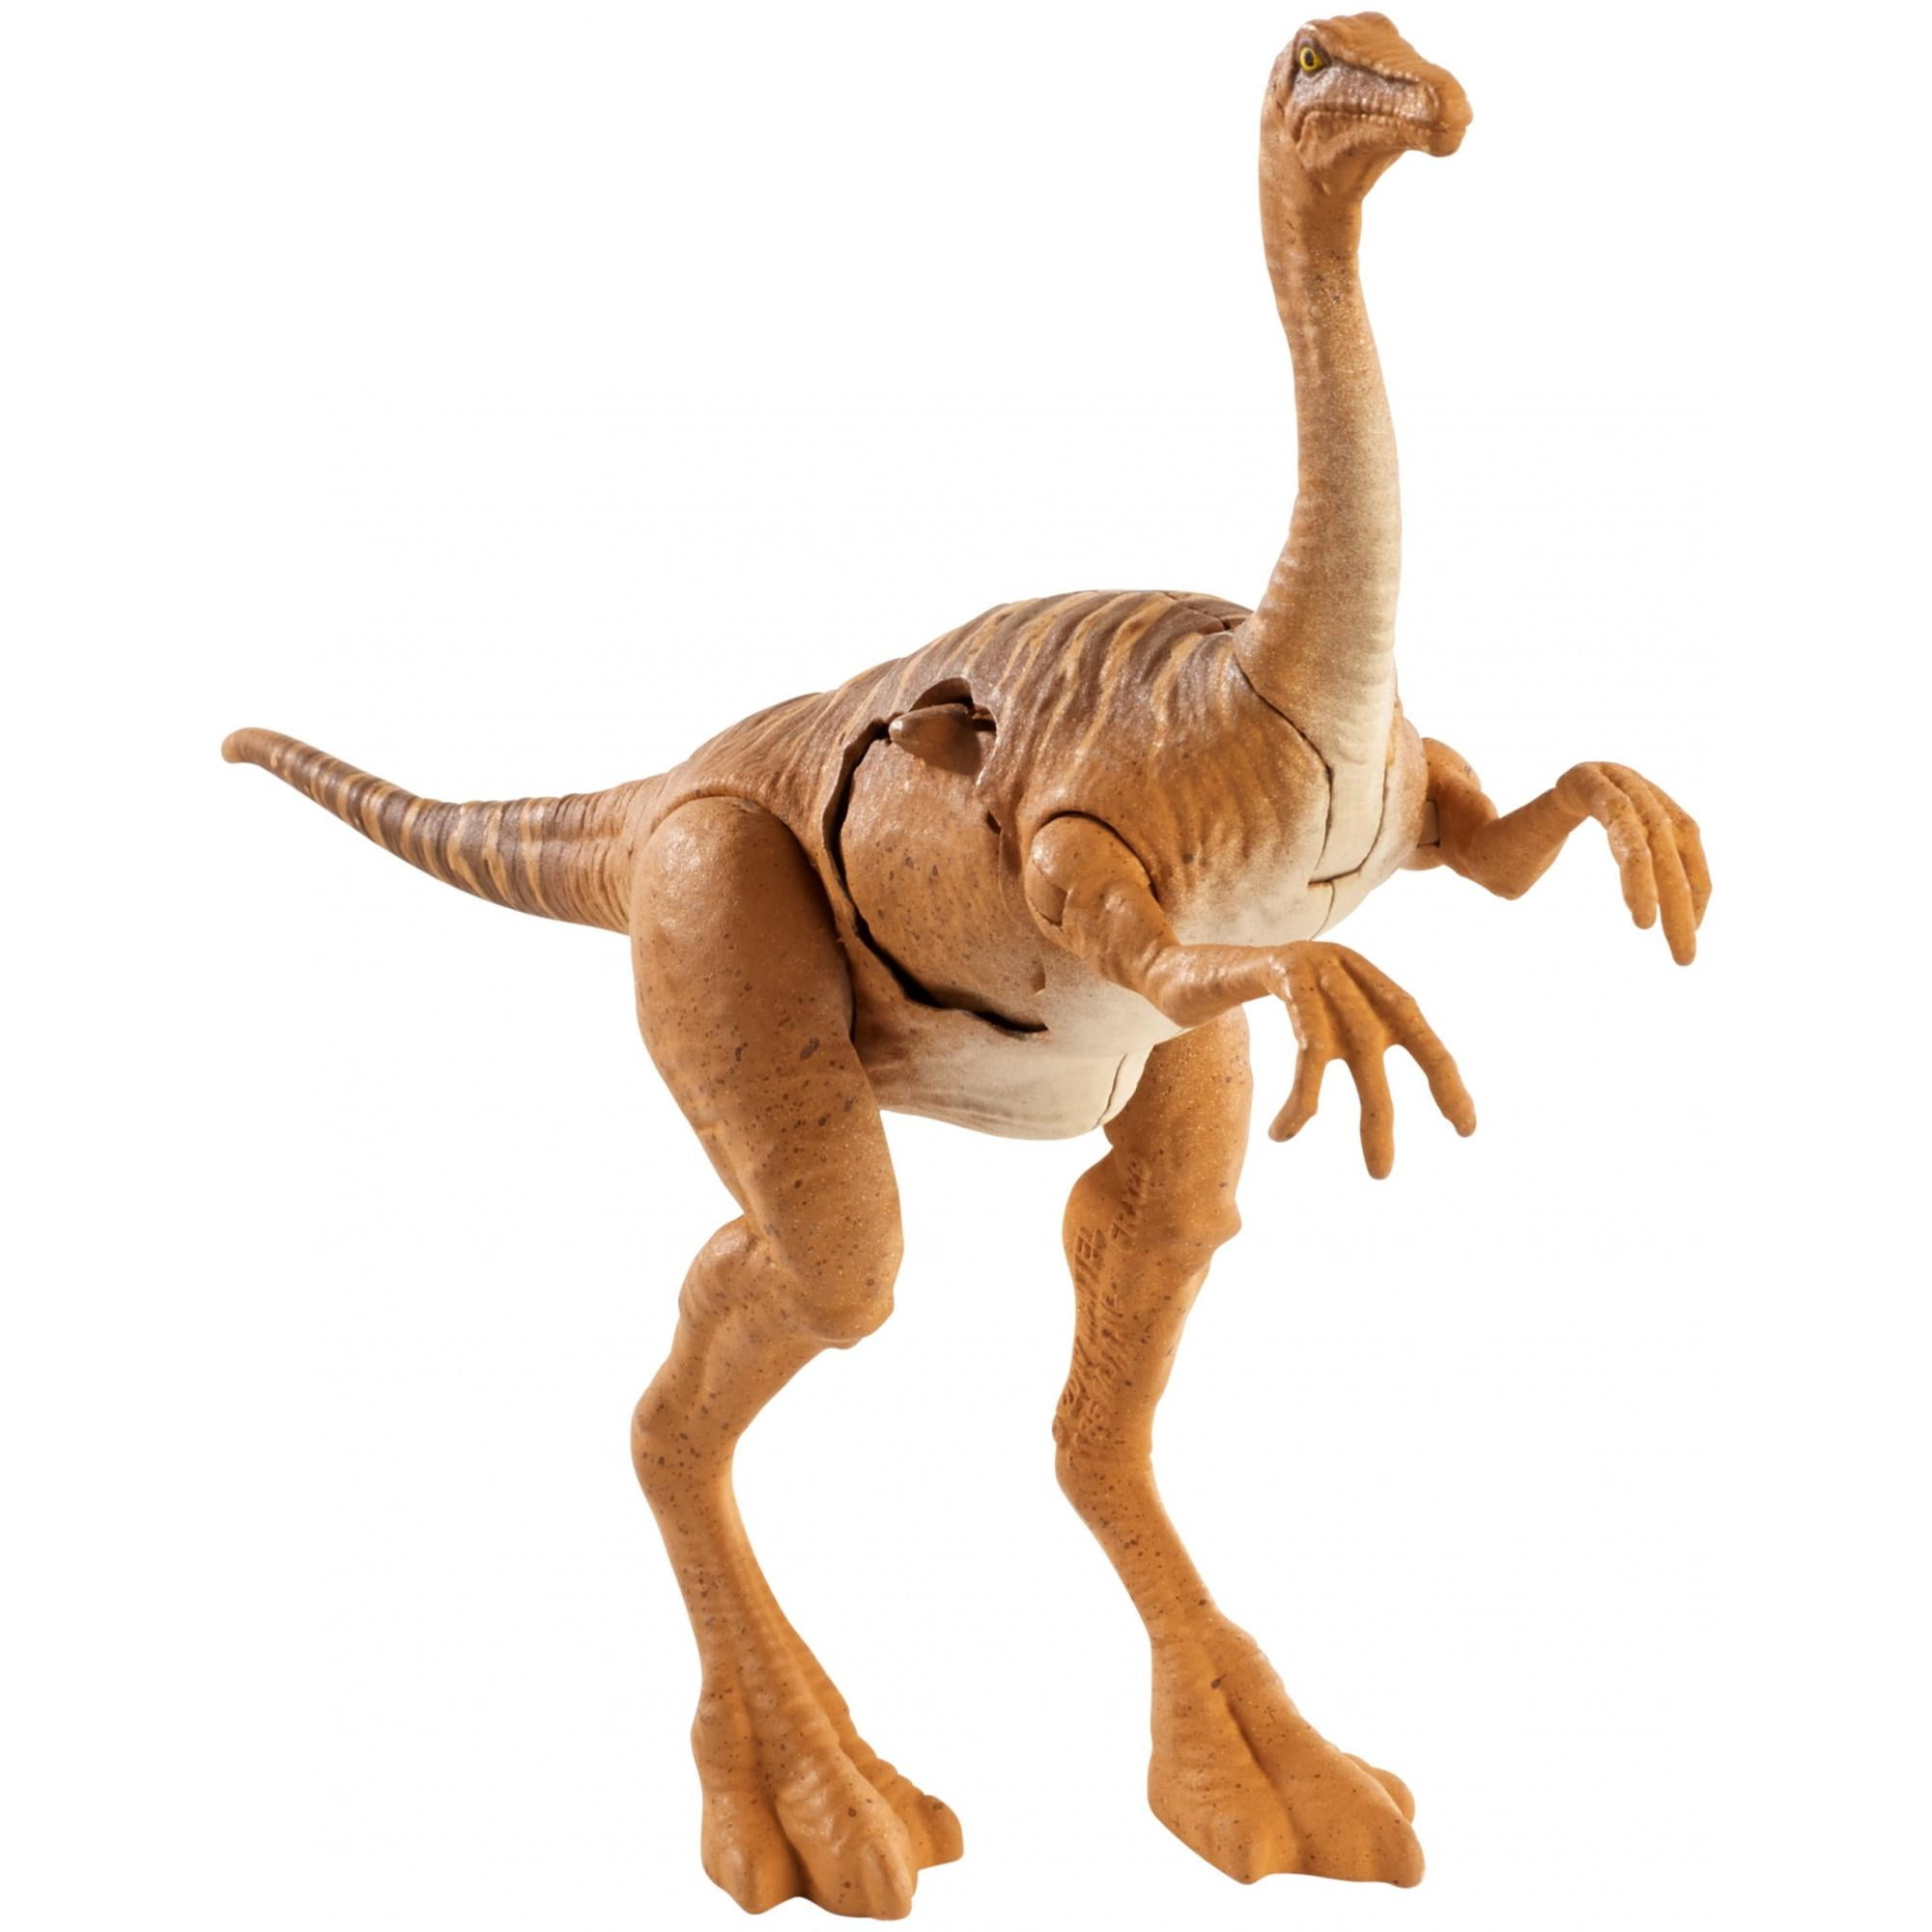 Mattel NEU & OVP Jurassic World Gallimimus Figur Dinosaurier 